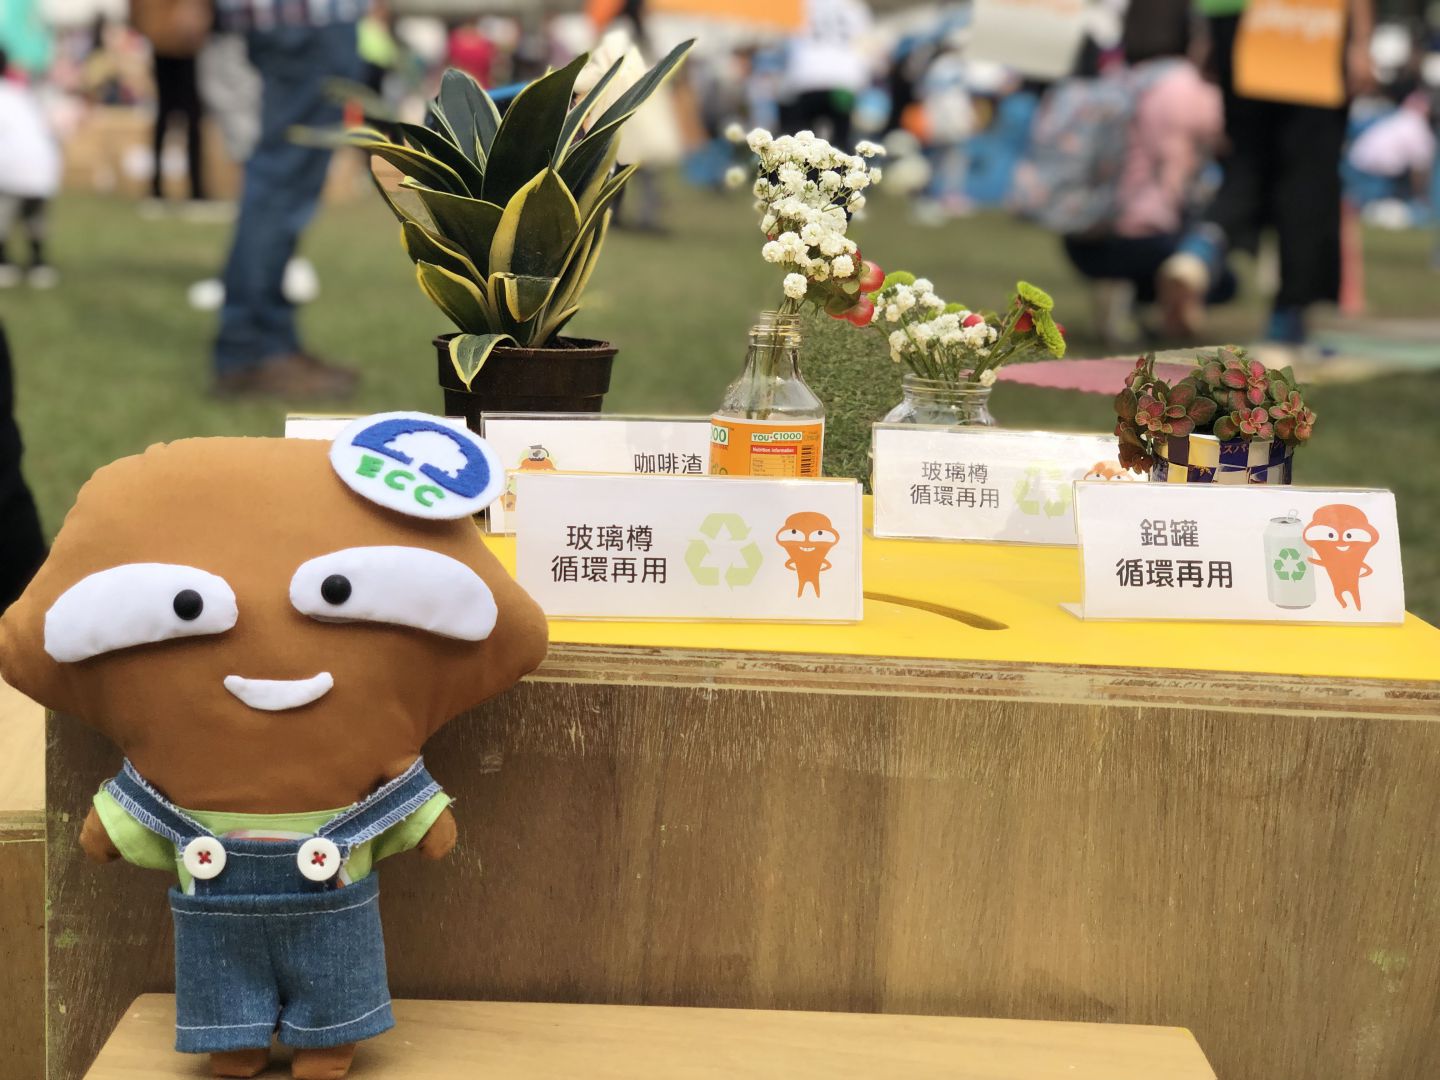 The Hong Kong Flower Show 2019